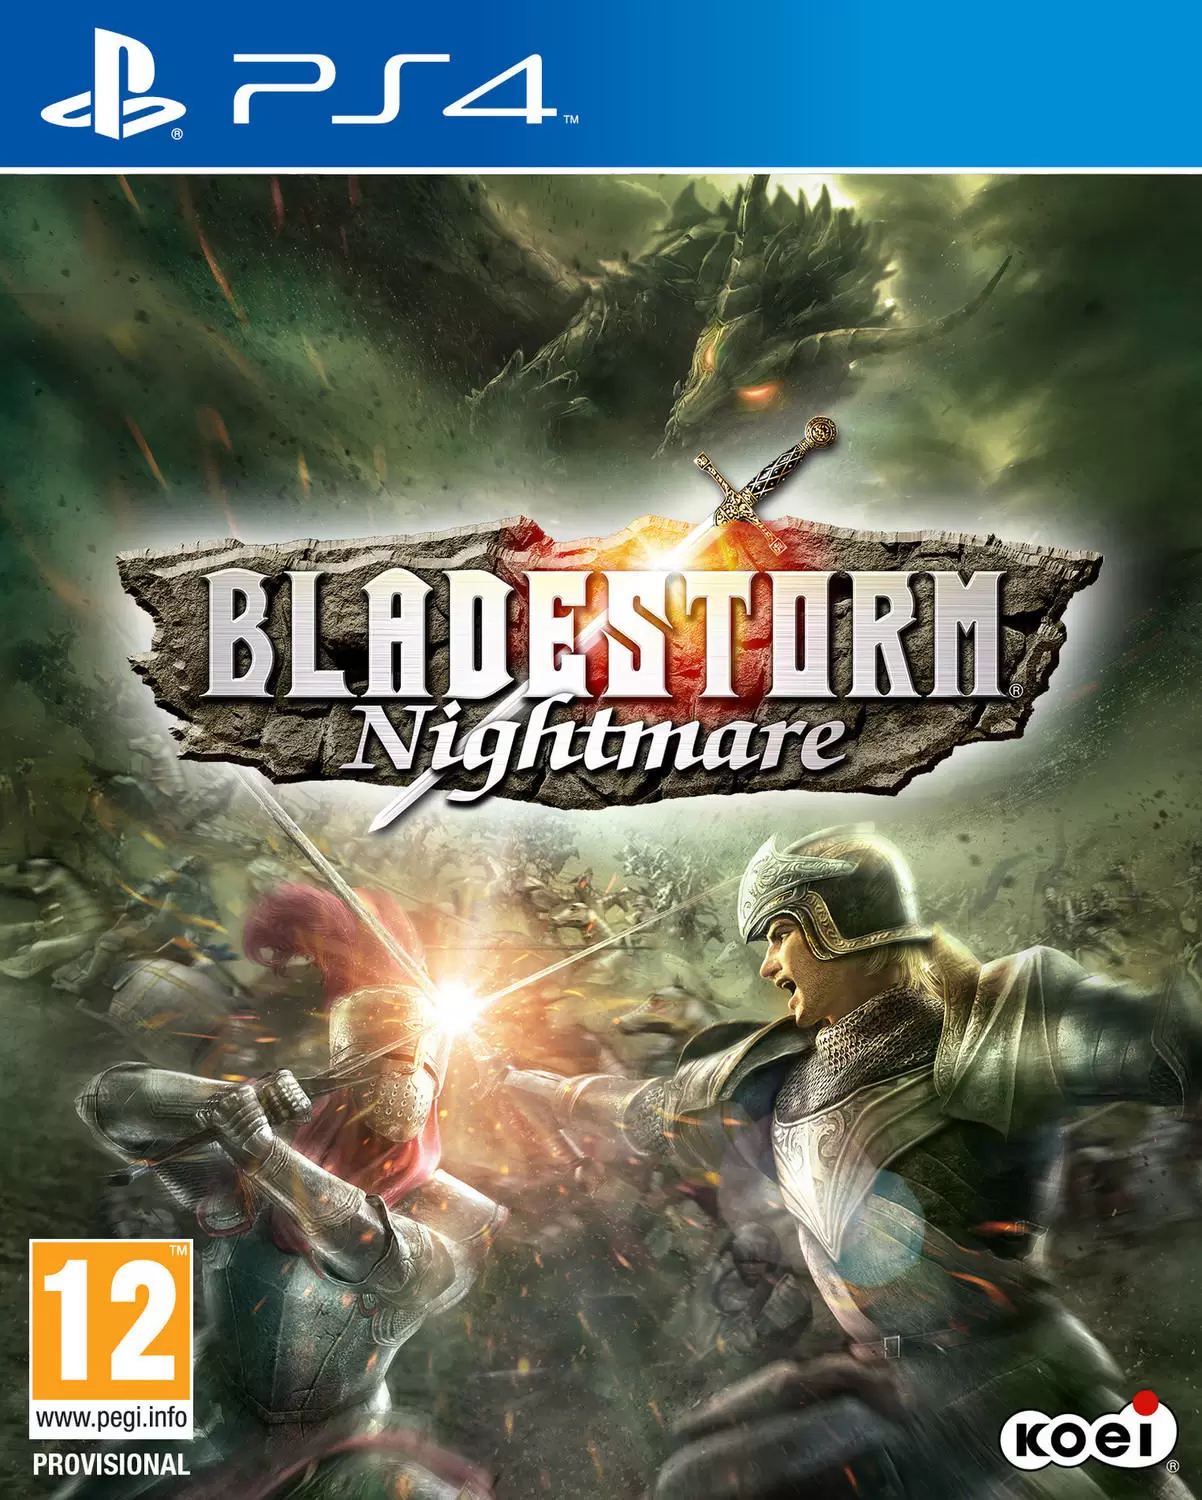 PS4 Games - Bladestorm: Nightmare